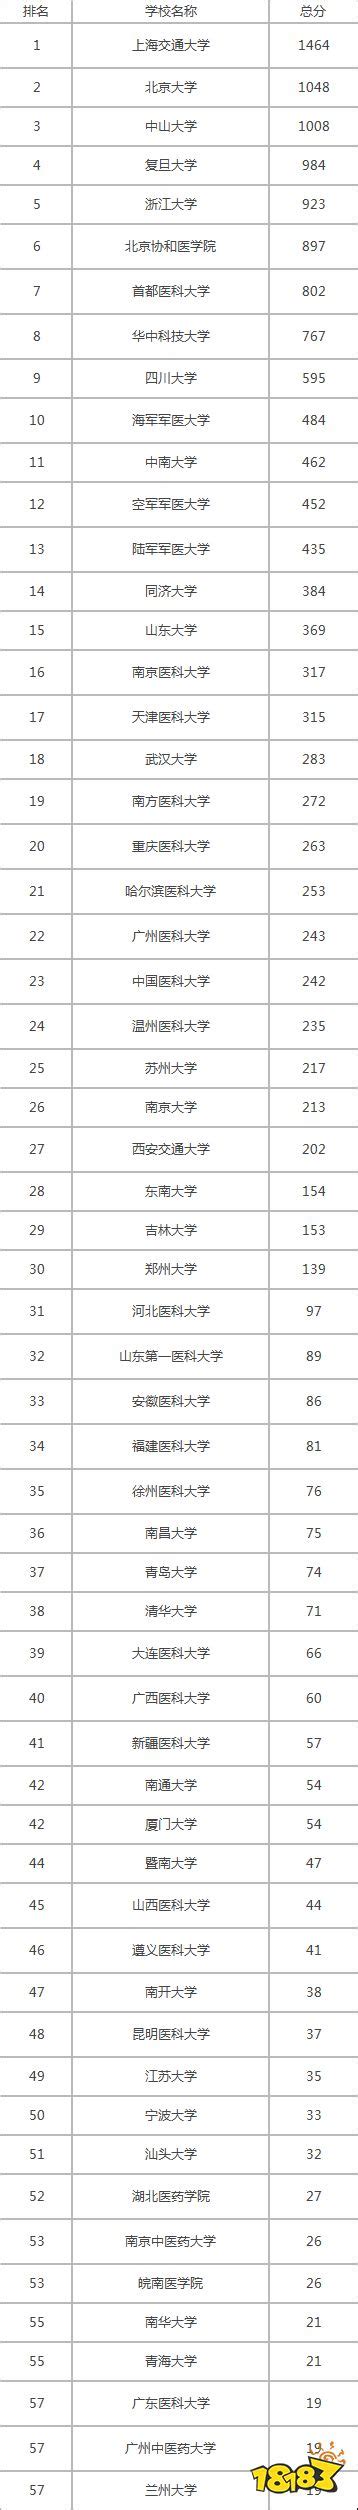 2021年中国临床医学专业大学排名 前100临床医科大学排名 18183Android游戏频道